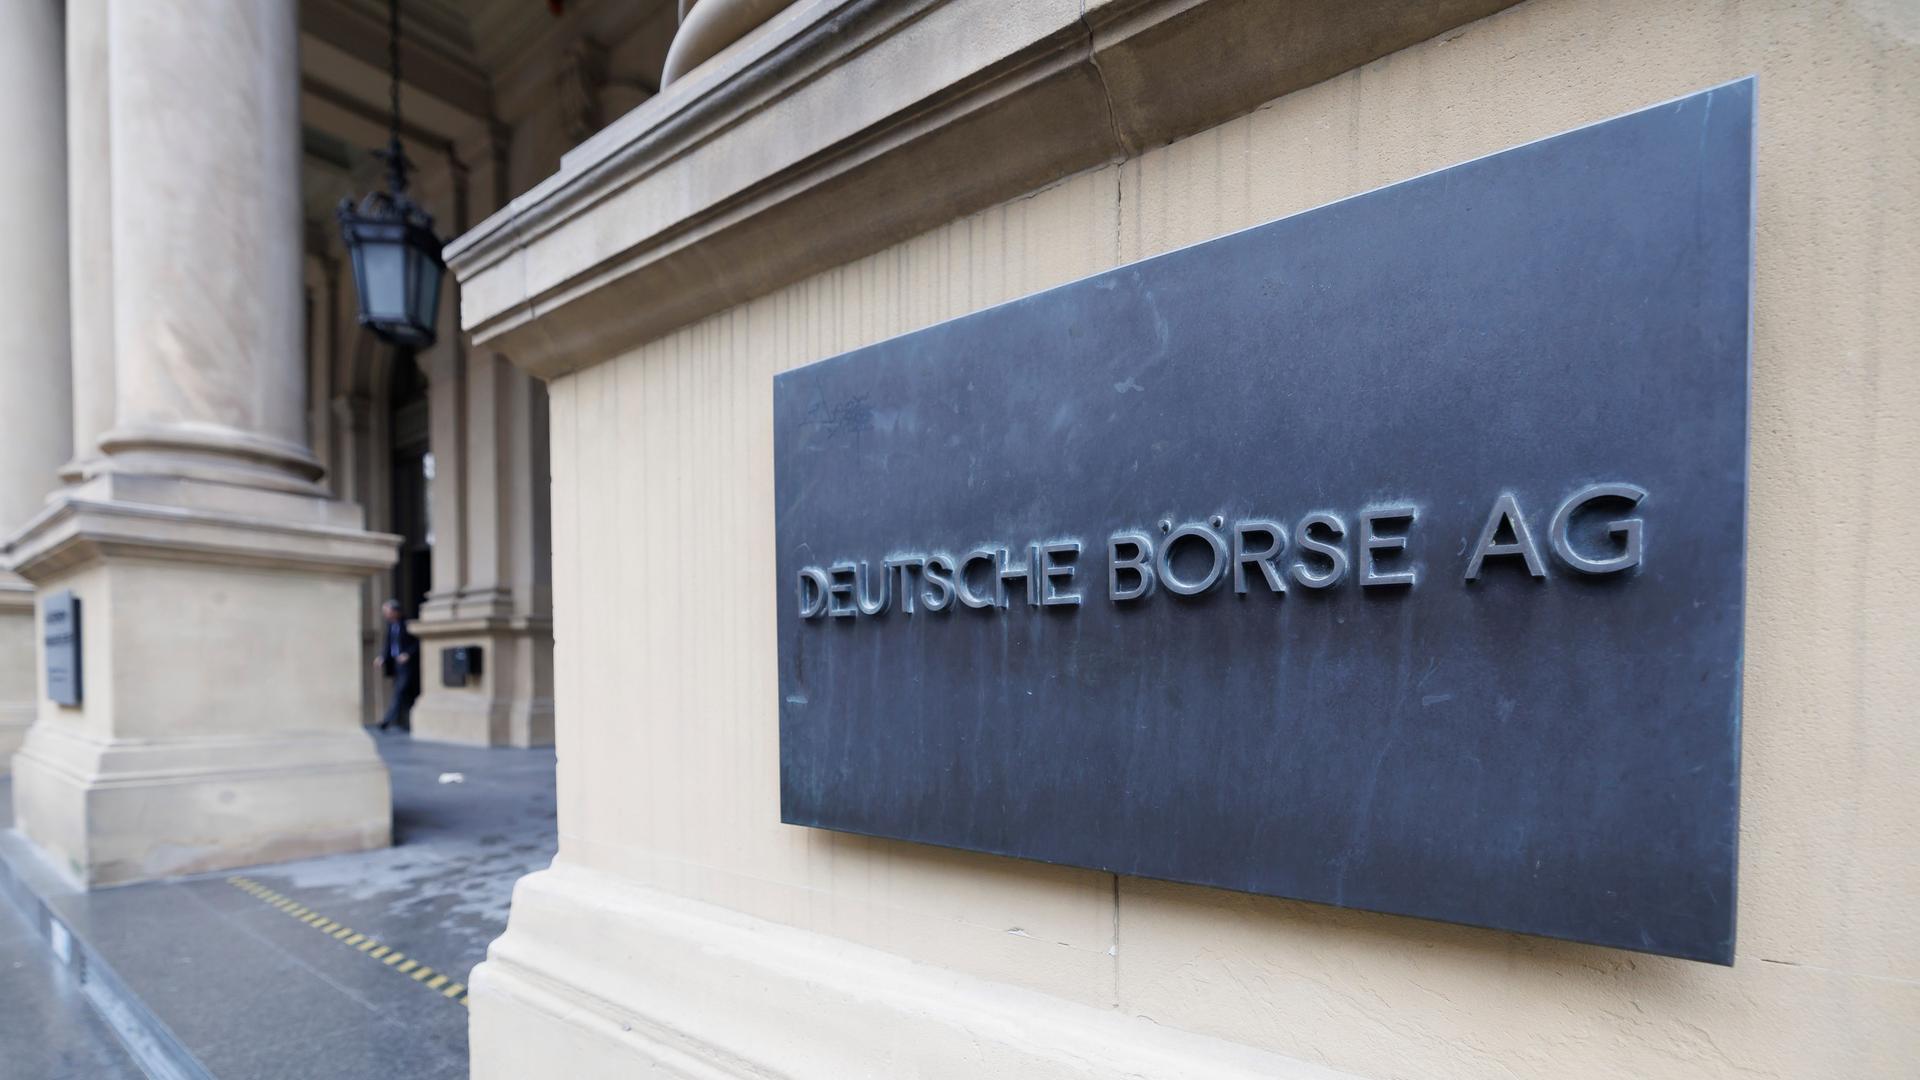 Der Schriftzug Deutsche Börse AG ist an der Fassade des Gebäudes zu lesen. 